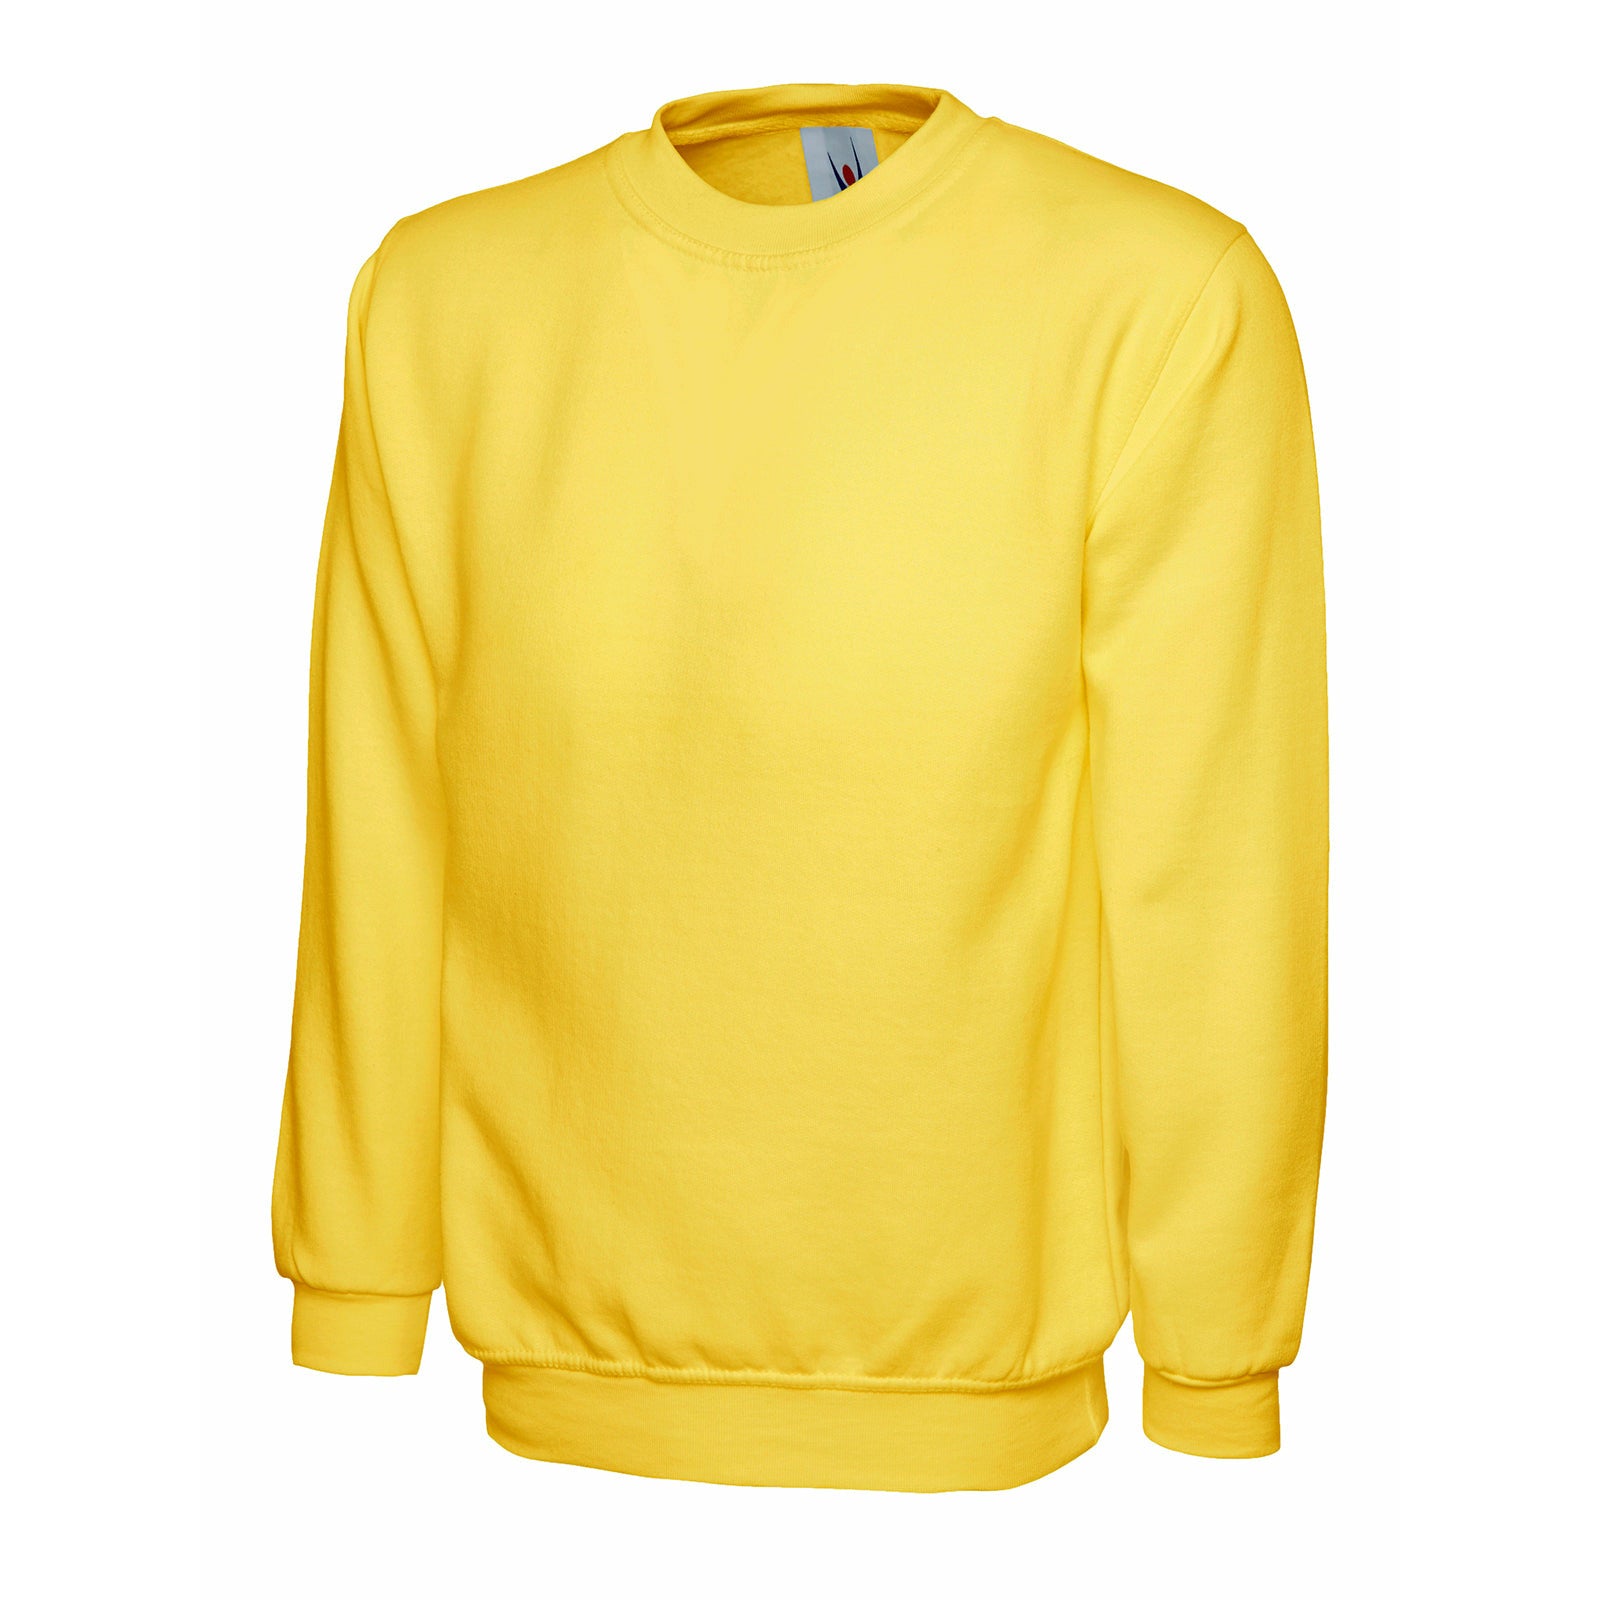 Childrens Sweatshirt Yellow